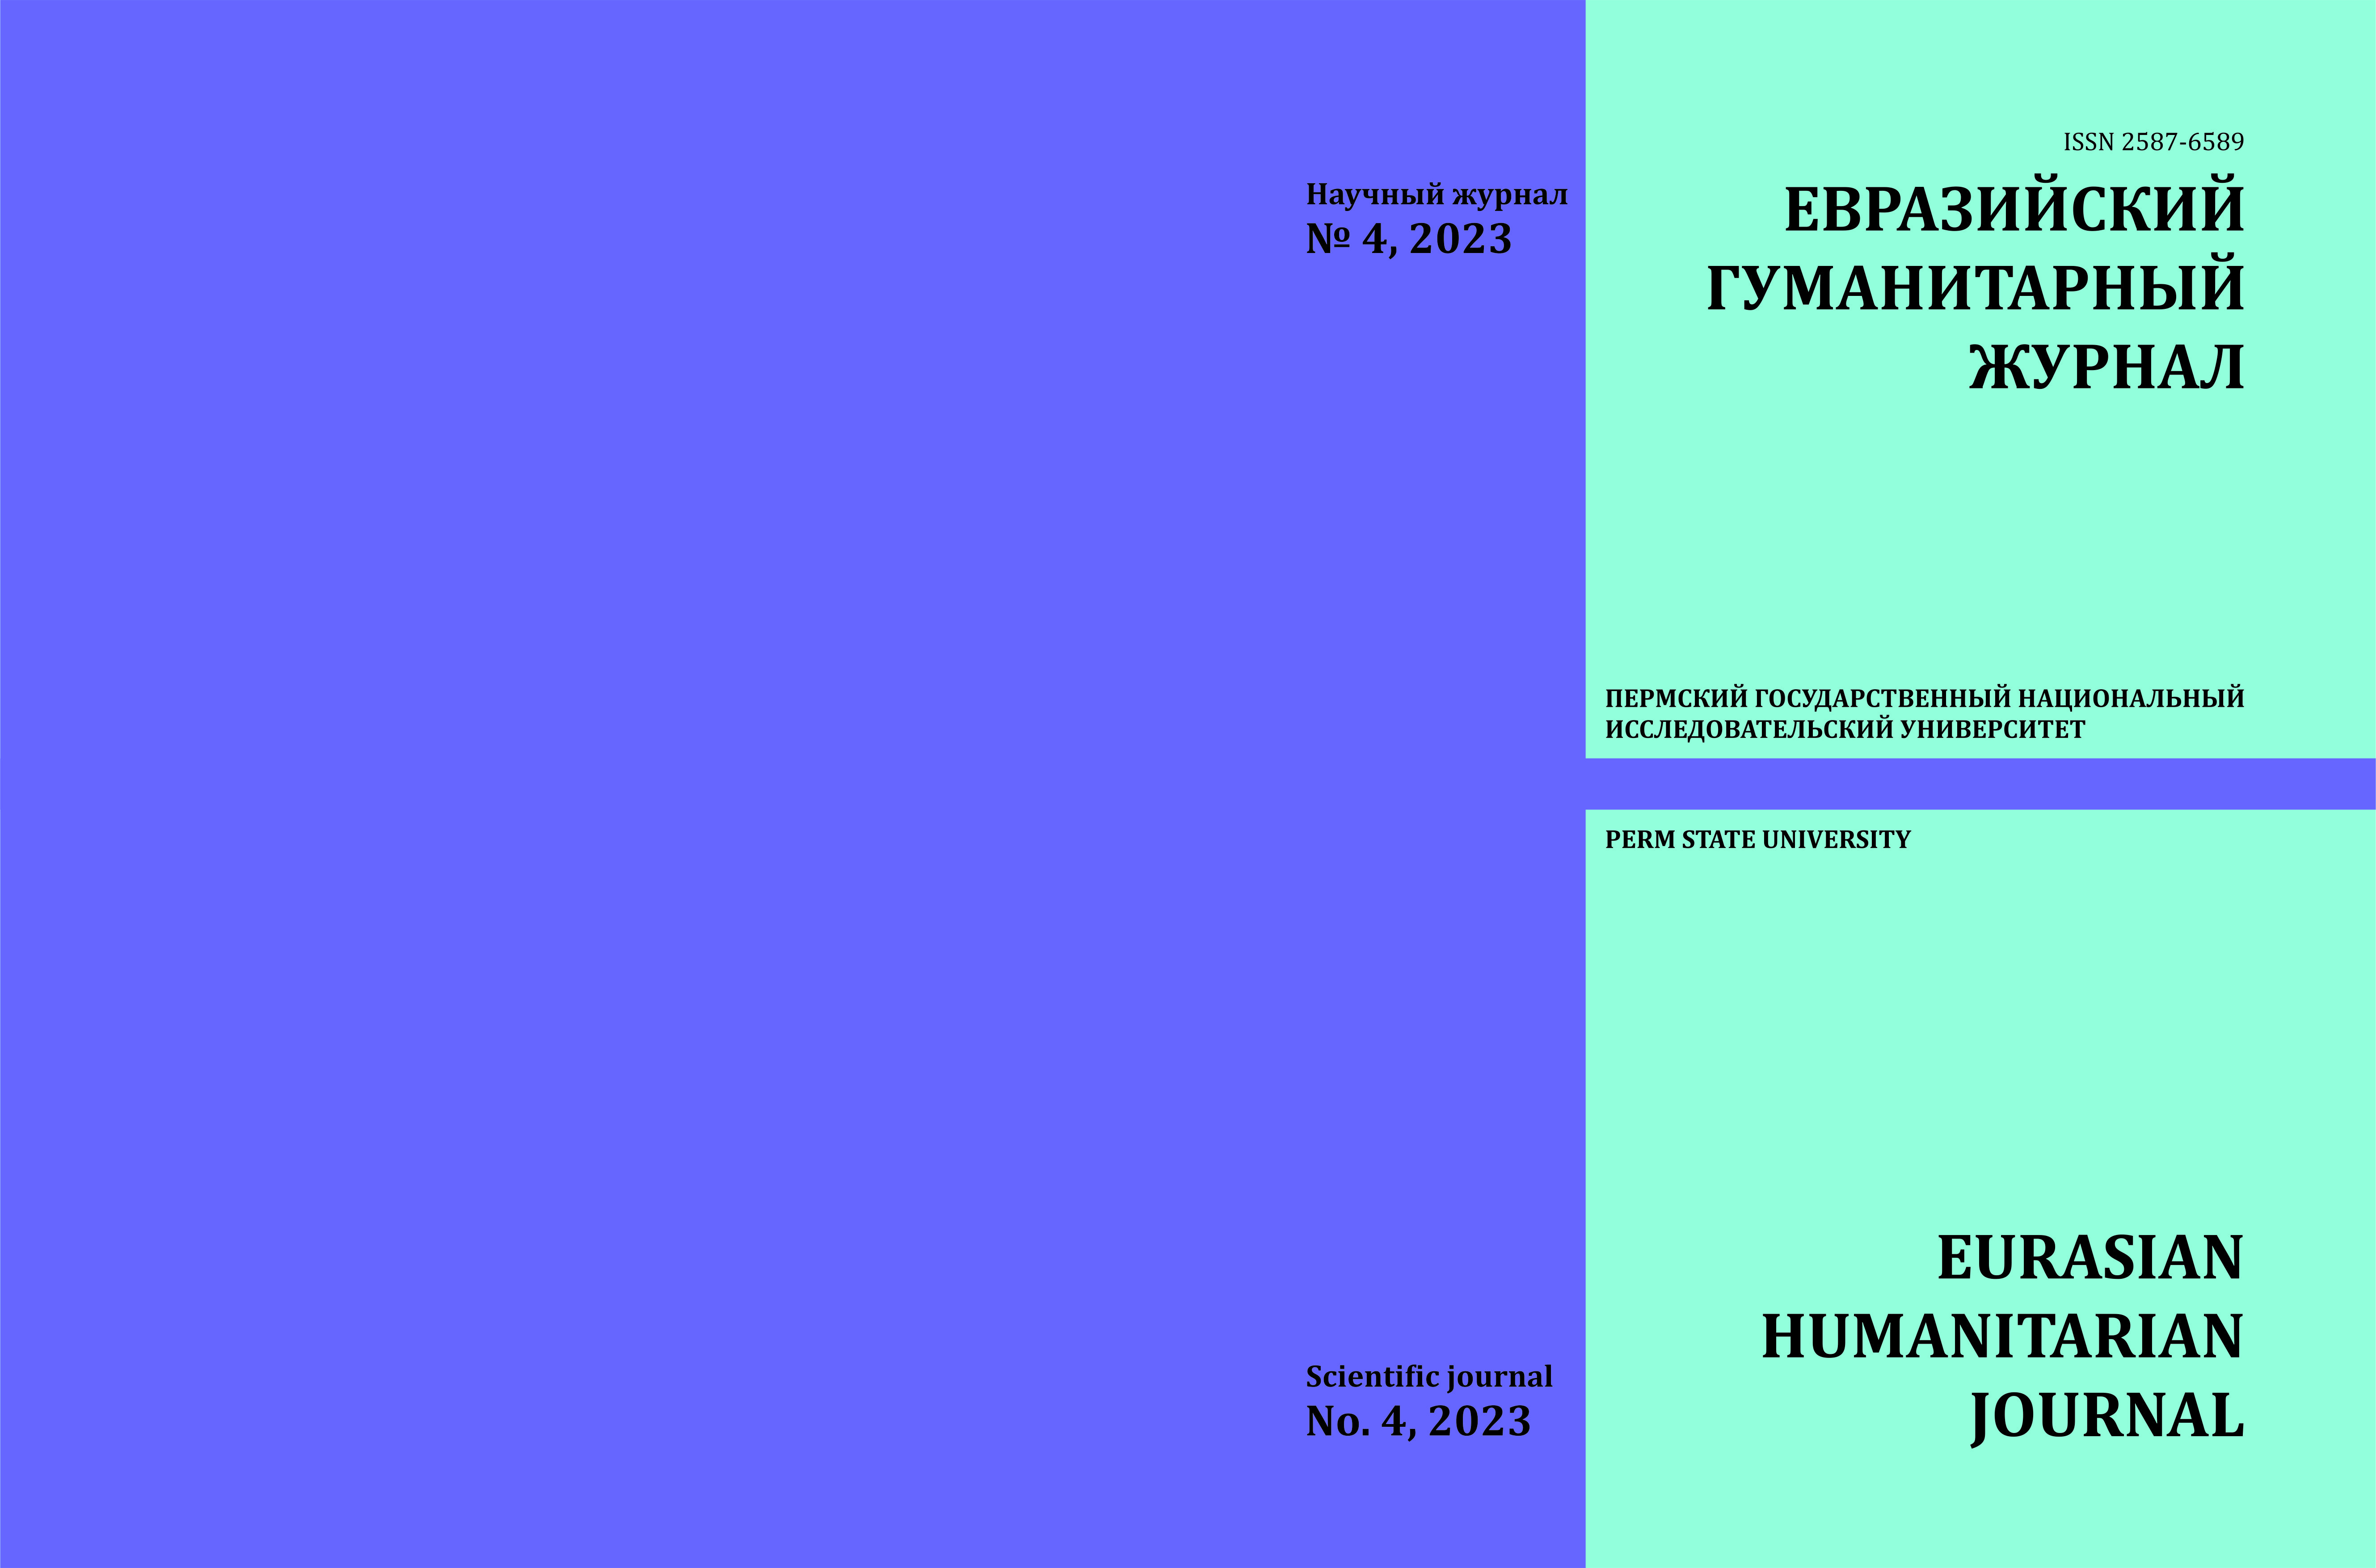 					Показать № 4 (2023): Евразийский гуманитарный журнал
				